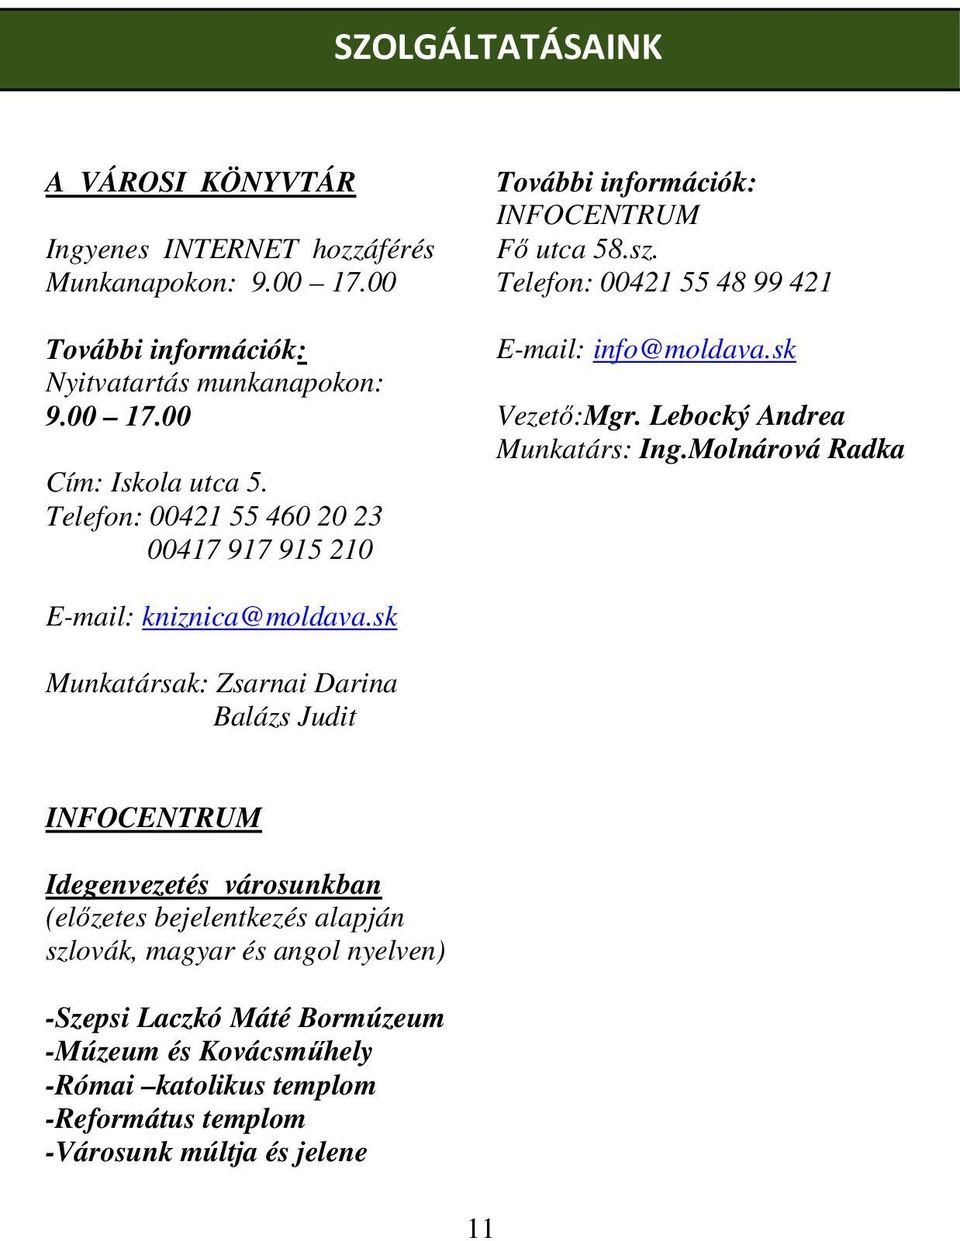 Lebocký Andrea Munkatárs: Ing.Molnárová Radka E-mail: kniznica@moldava.